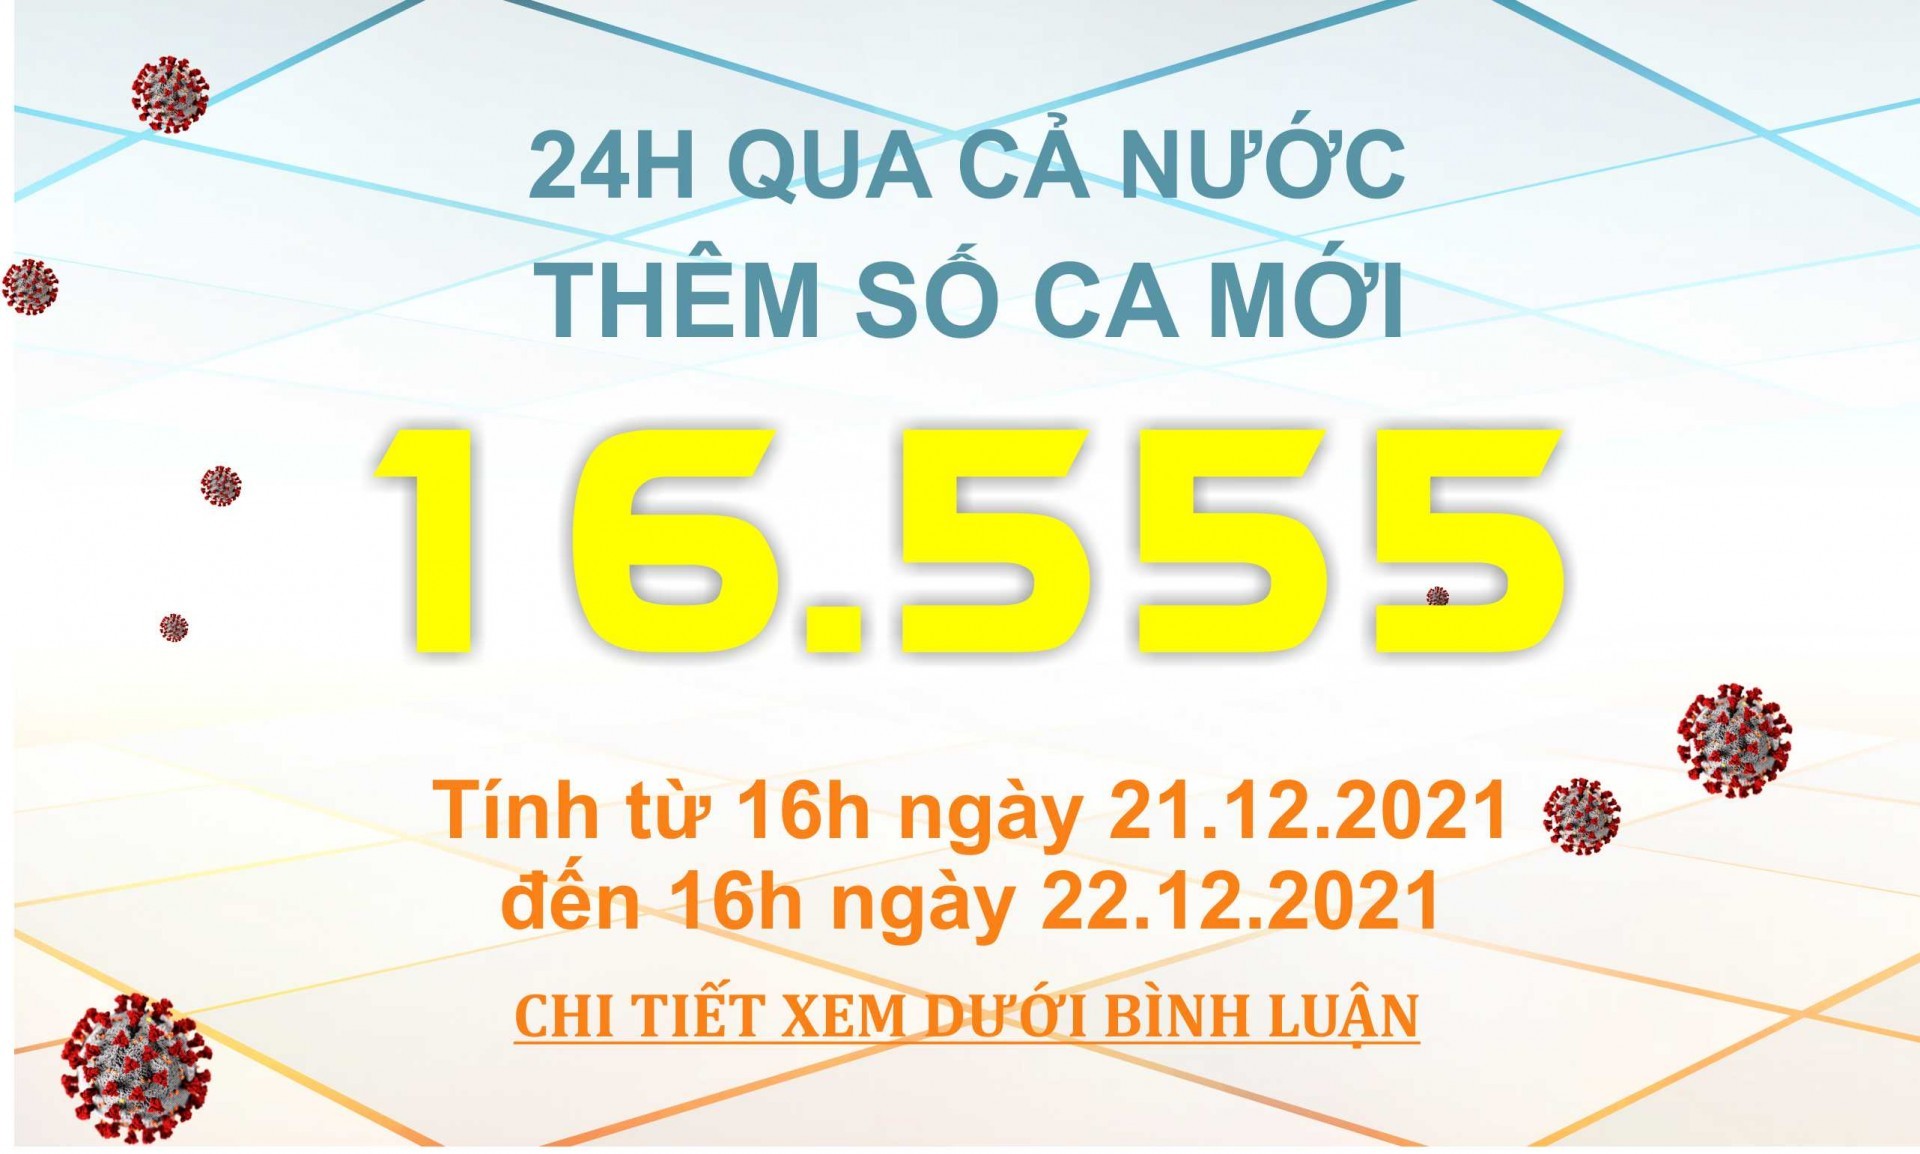 Ngày 22/12: Có 16.555 ca COVID-19, Hà Nội ngày thứ 3 liên tục số mắc nhiều nhất cả nước với 1.646 ca